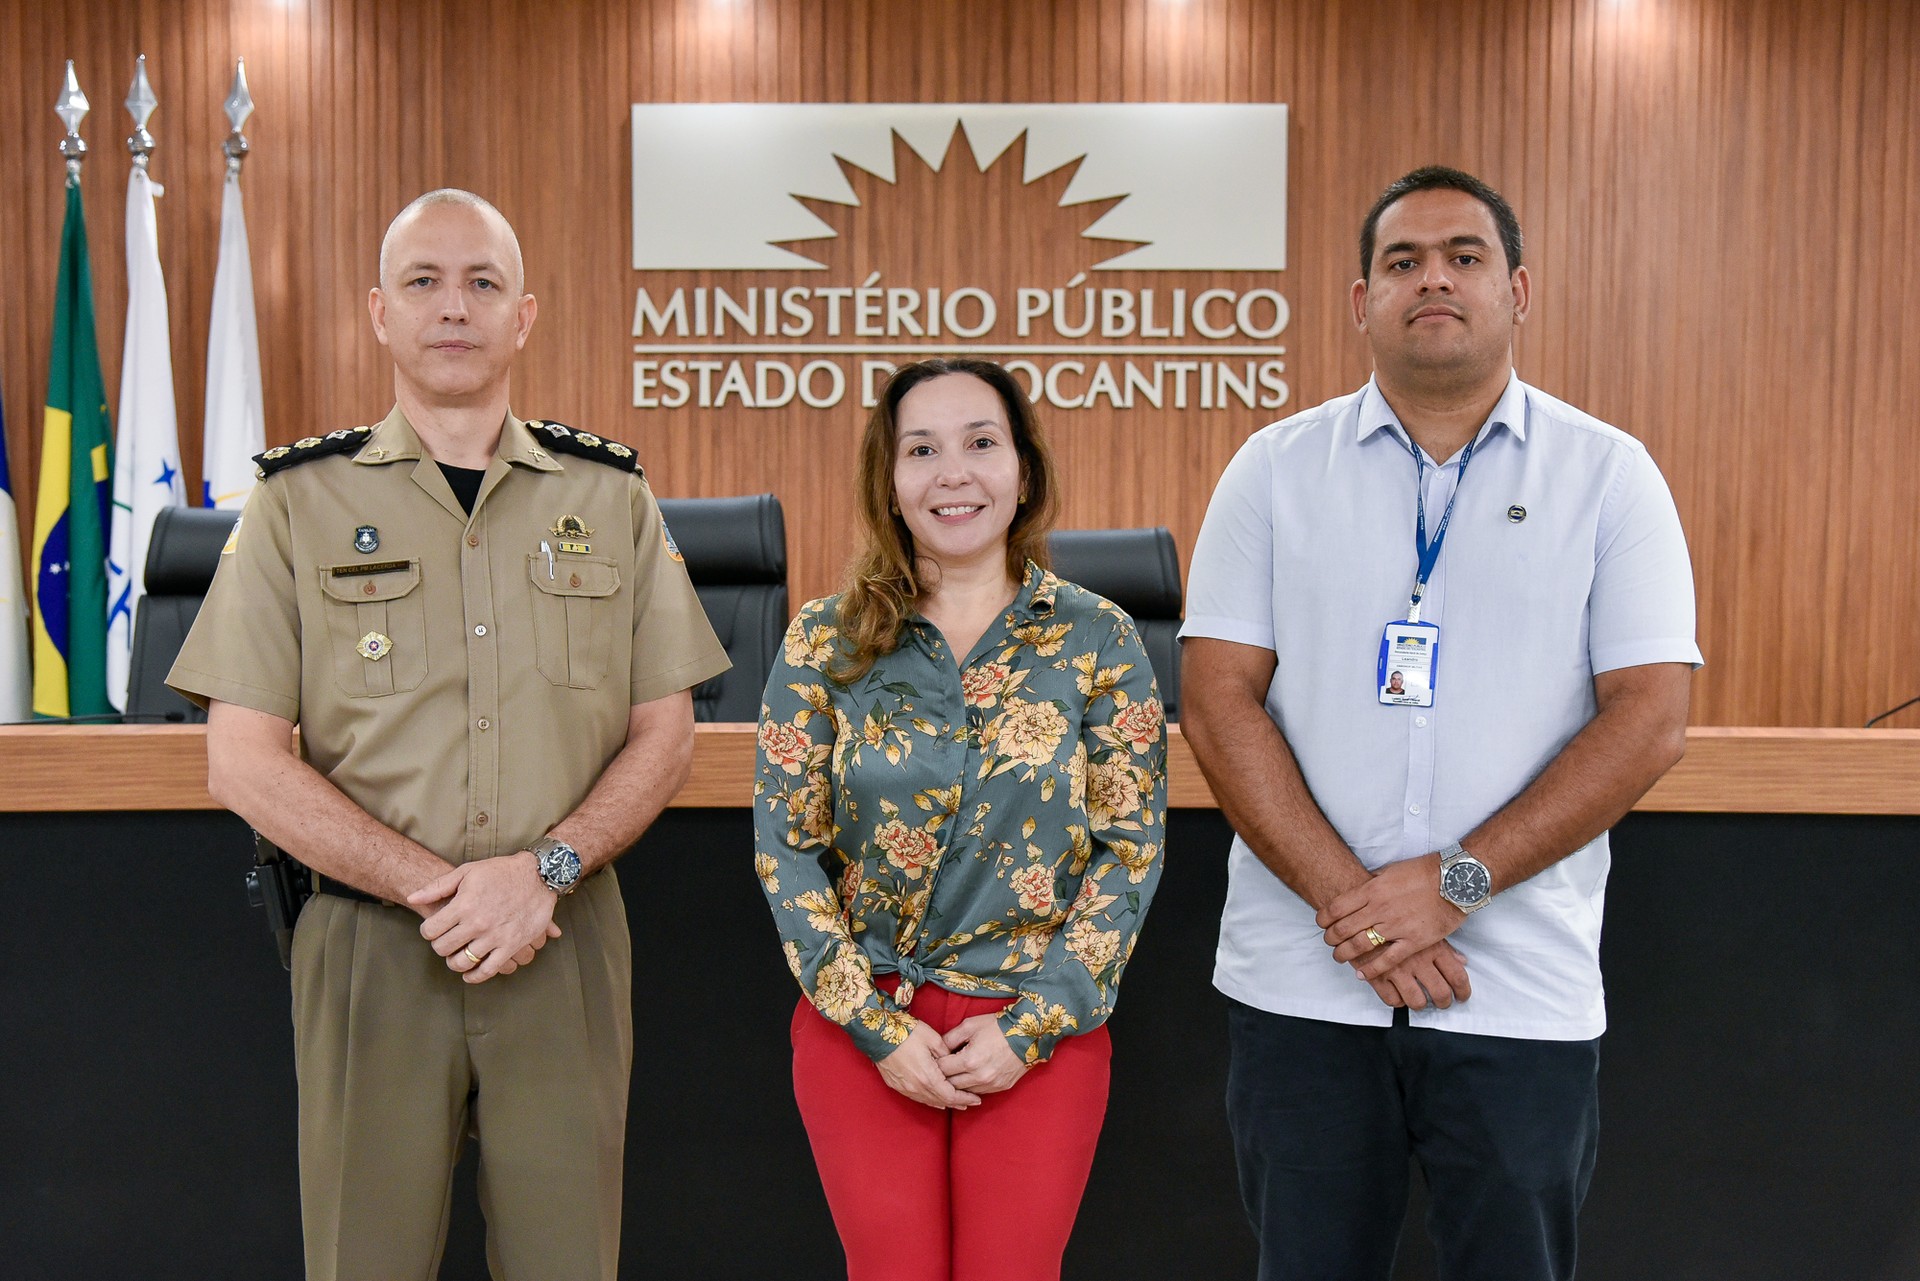 Promotora de Justiça Isabelle Figueiredo, tenente-coronel PM Rodrigo Lacerda e o chefe da Assessoria Militar do MPTO, tenente-coronel Leandro Guimarães Nunes